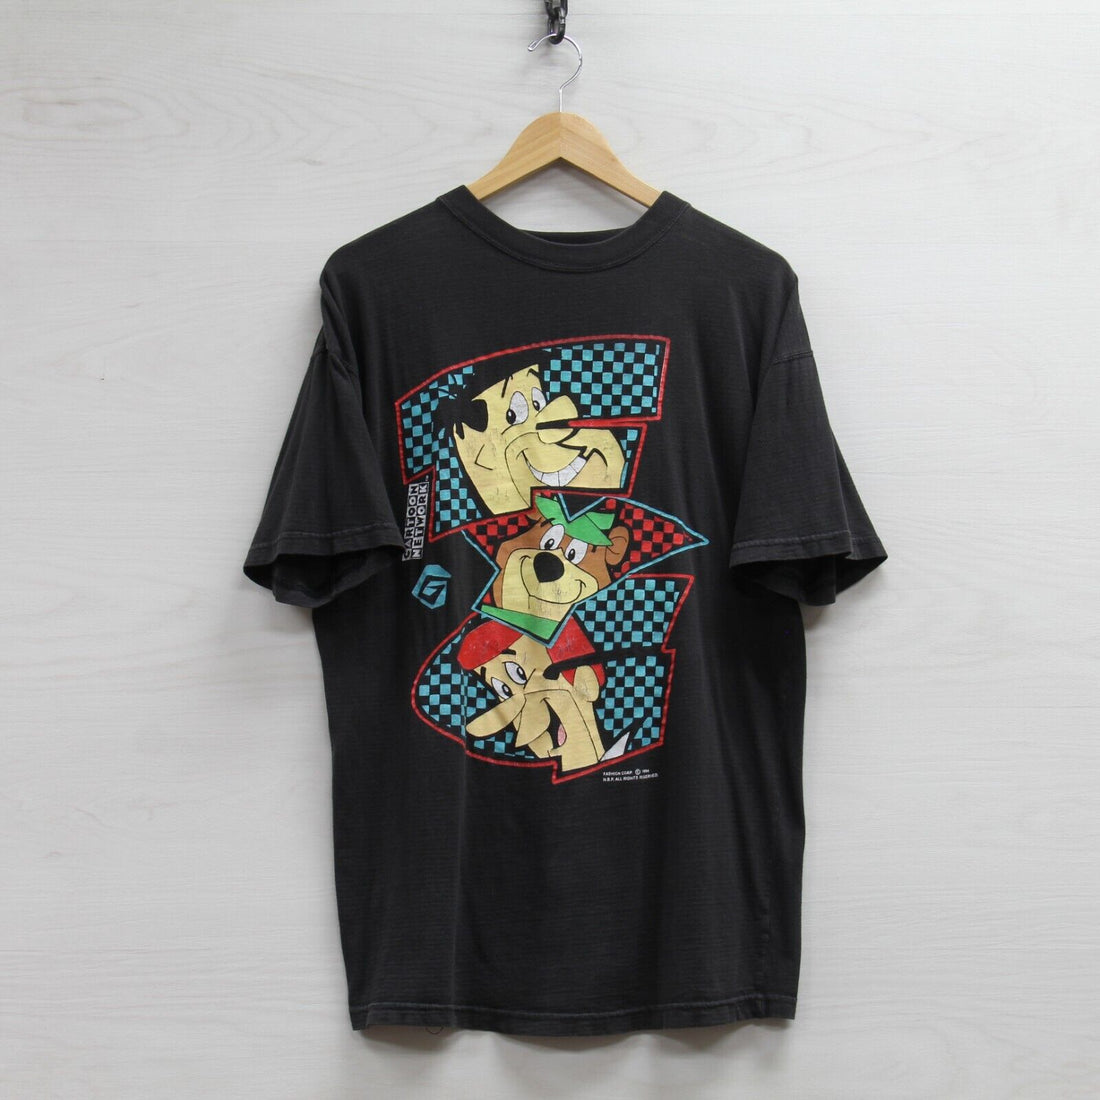 Vintage Cartoon Network T-Shirt Sz Large 1994 90s Flintstones Jetsons Yogi Bear